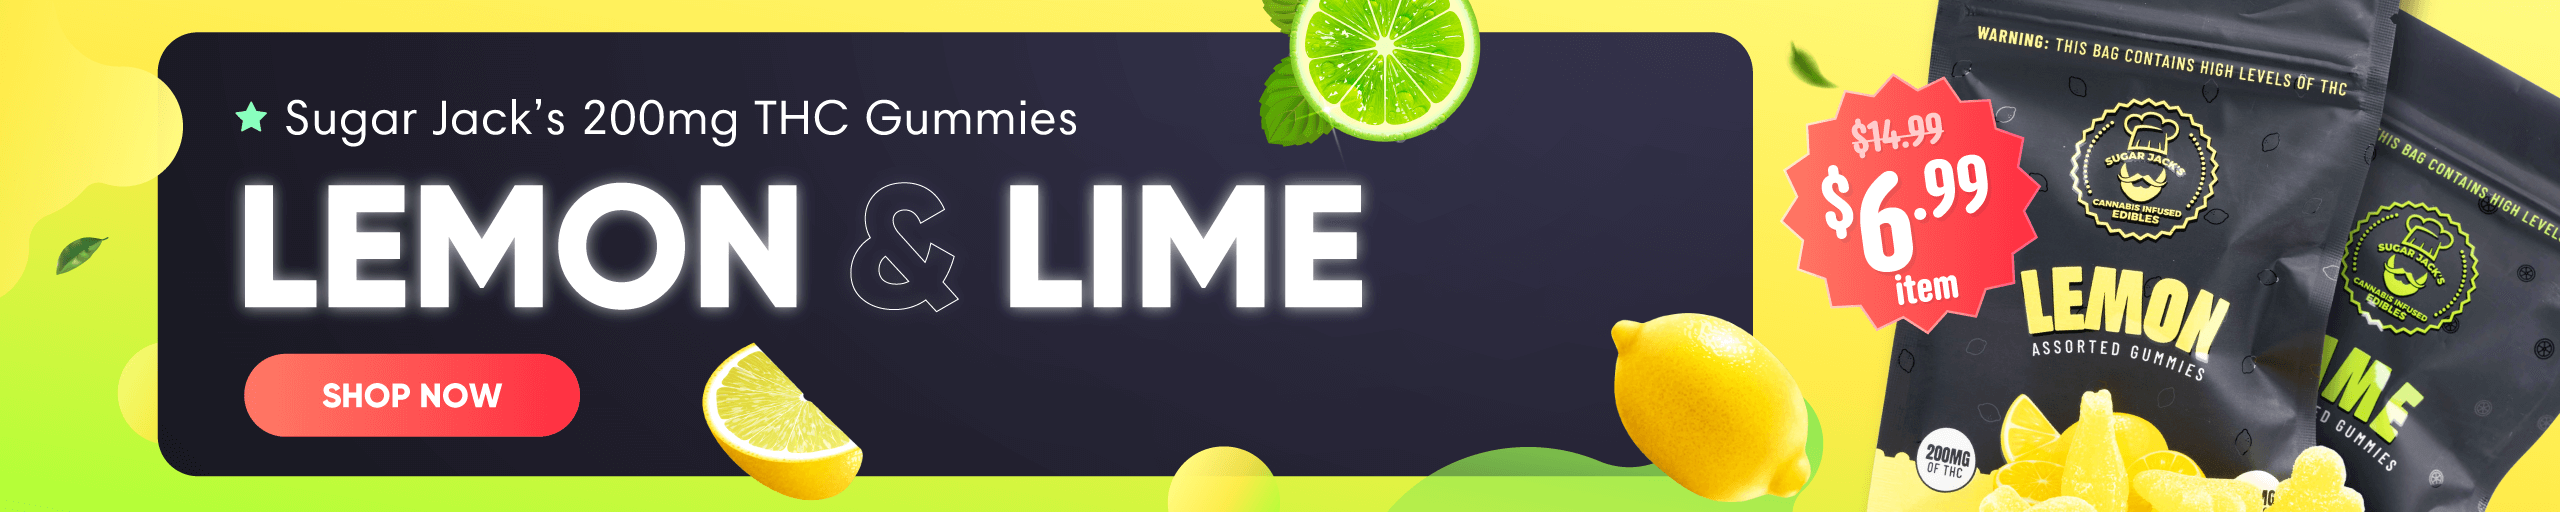 Lemon Lime Web